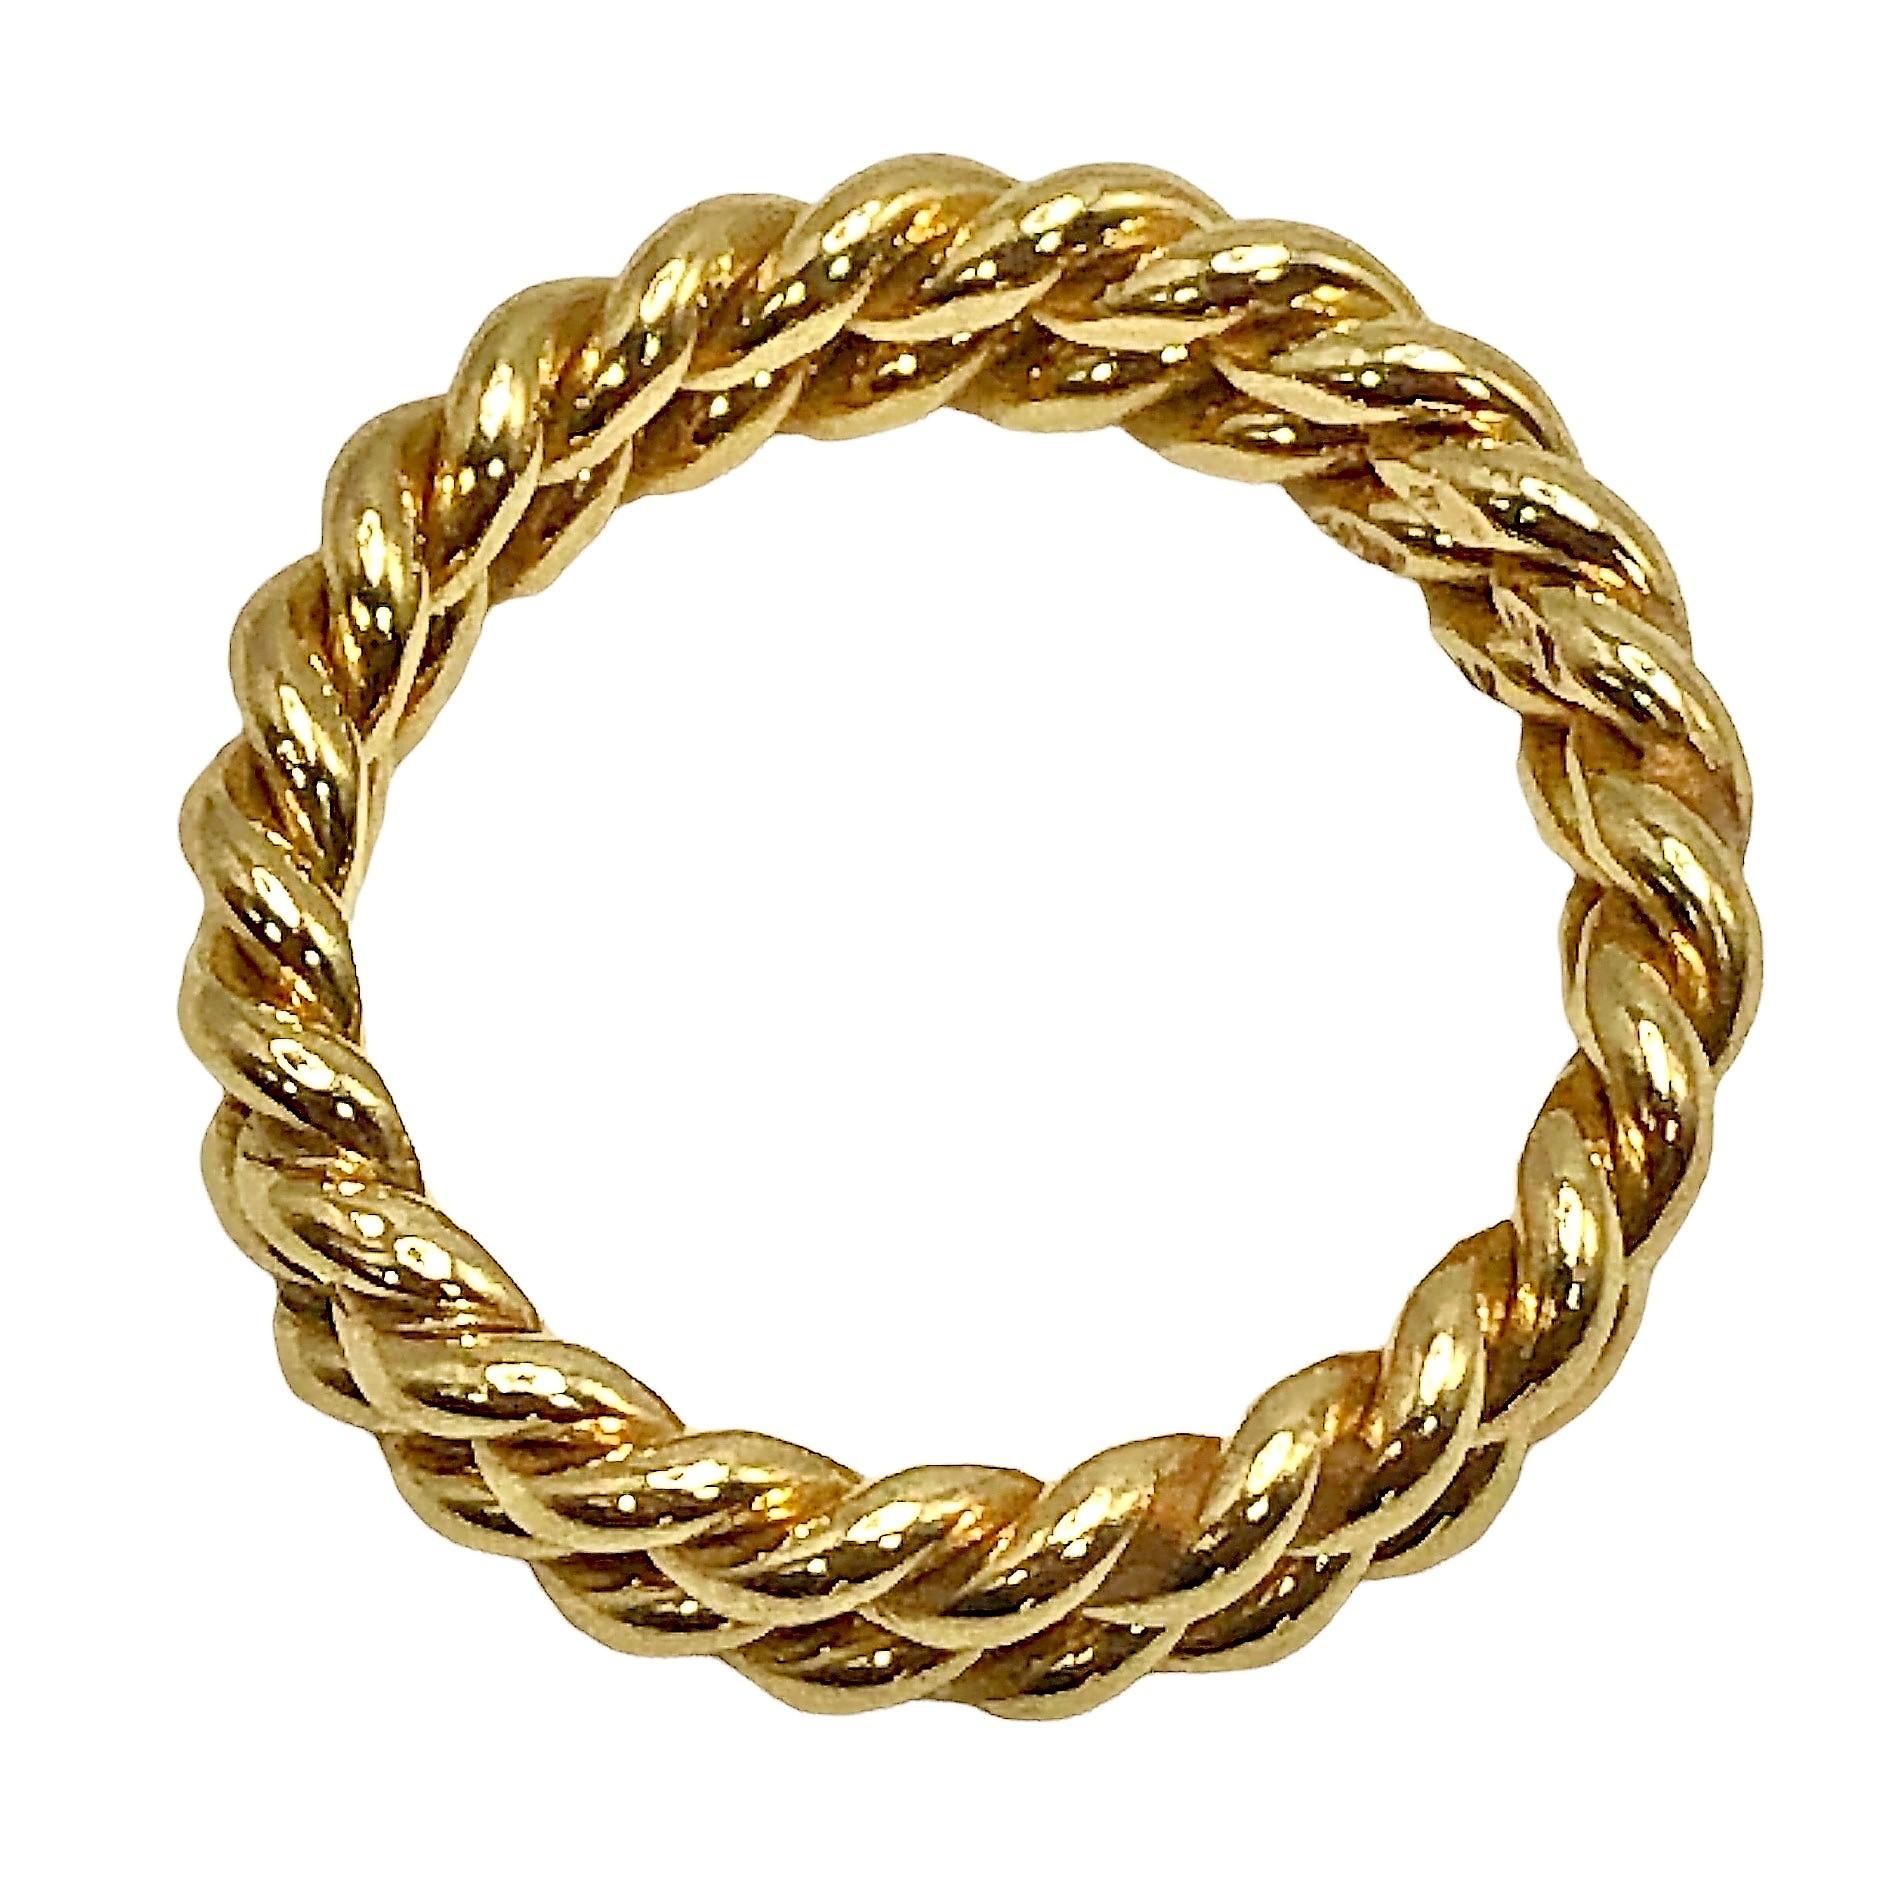 Dieses zarte Paar handgefertigter Ringe aus 14k Gelbgold hat eine Dicke von jeweils etwas mehr als 2,3 mm, bei einer Gesamtbreite von 4,7 mm. Sie sind wunderschön und liebevoll gestaltet und heben jedes Schmuckband hervor, wenn sie an beiden Seiten